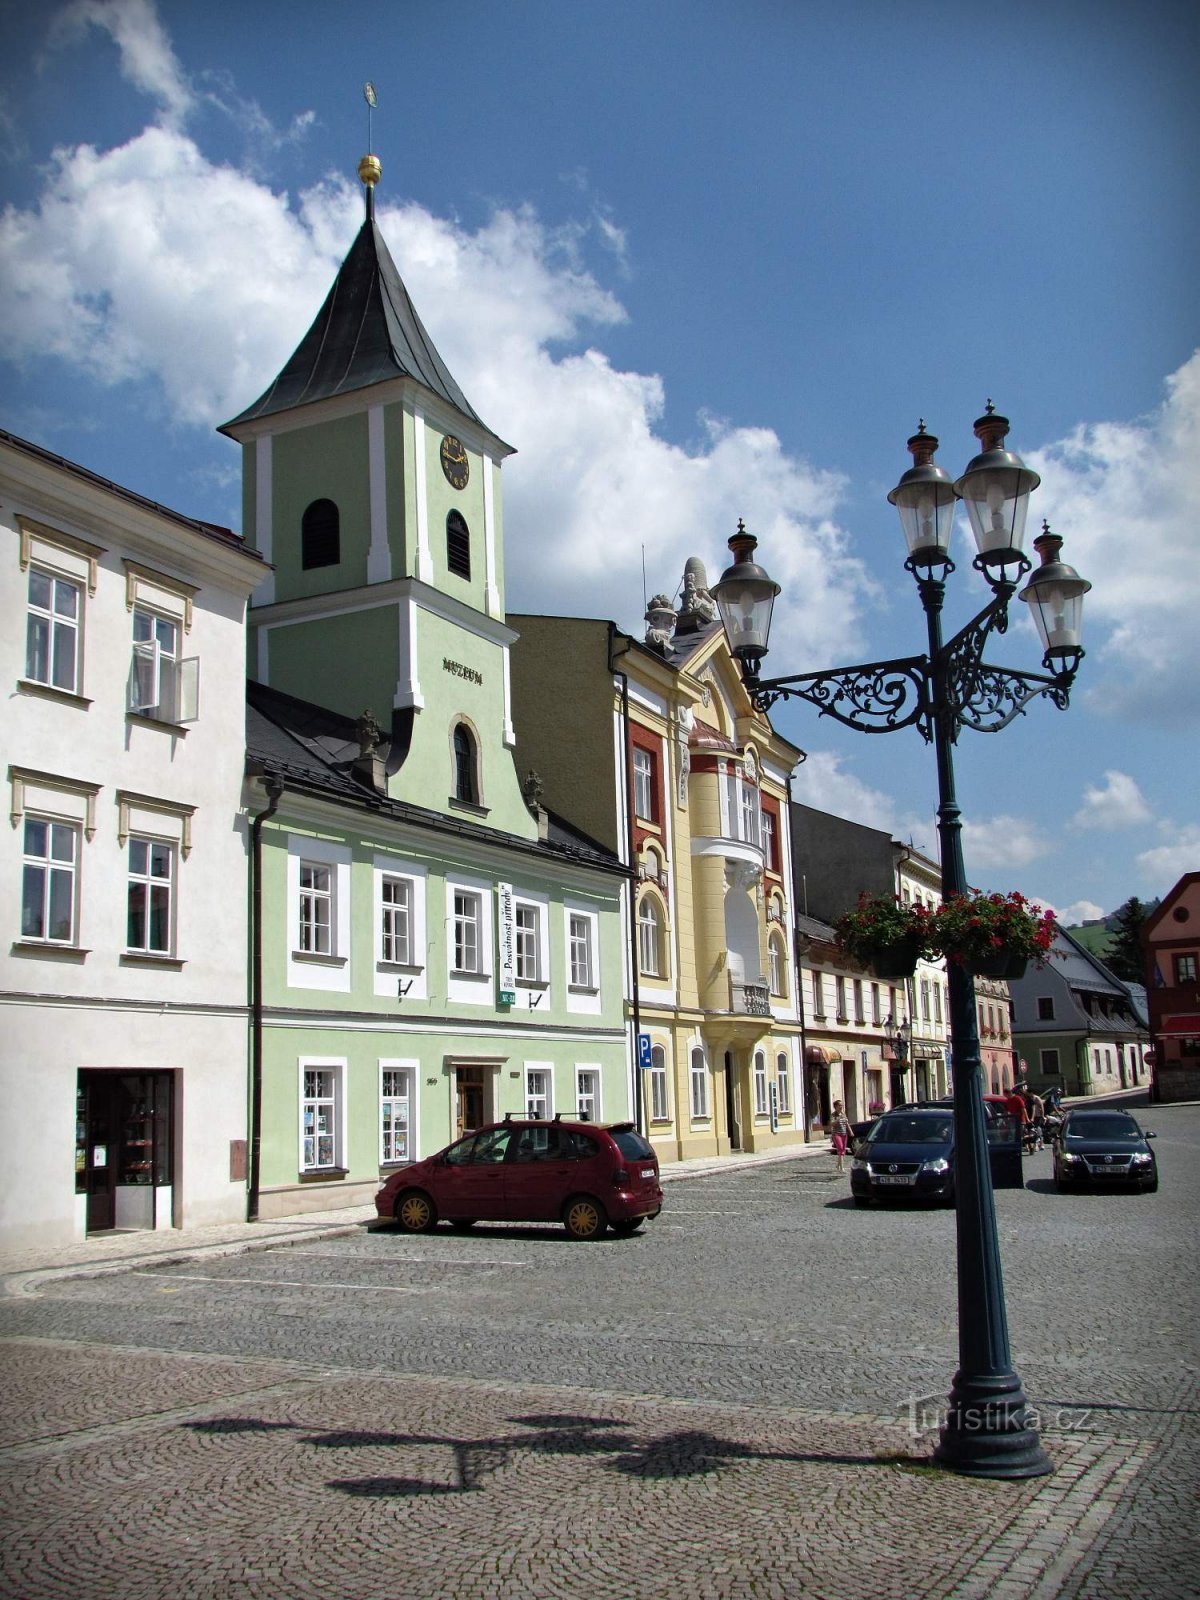 Králíky - the main market